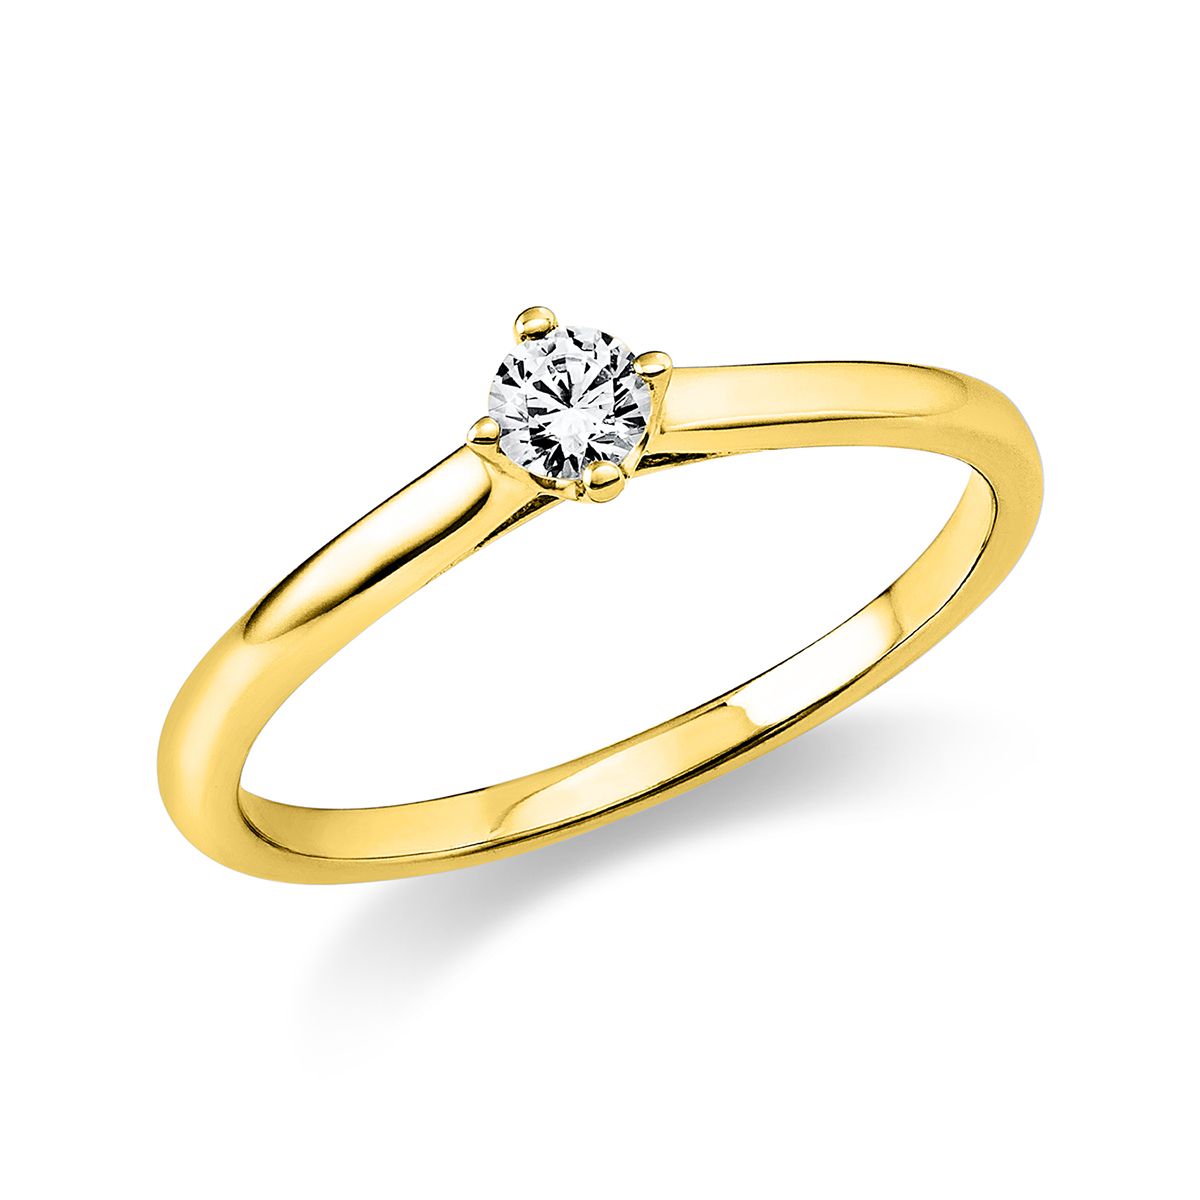 Solitär-Ring 4-Griff-Fassung 585/14K Gelbgold, Diamant 0.15 ct.